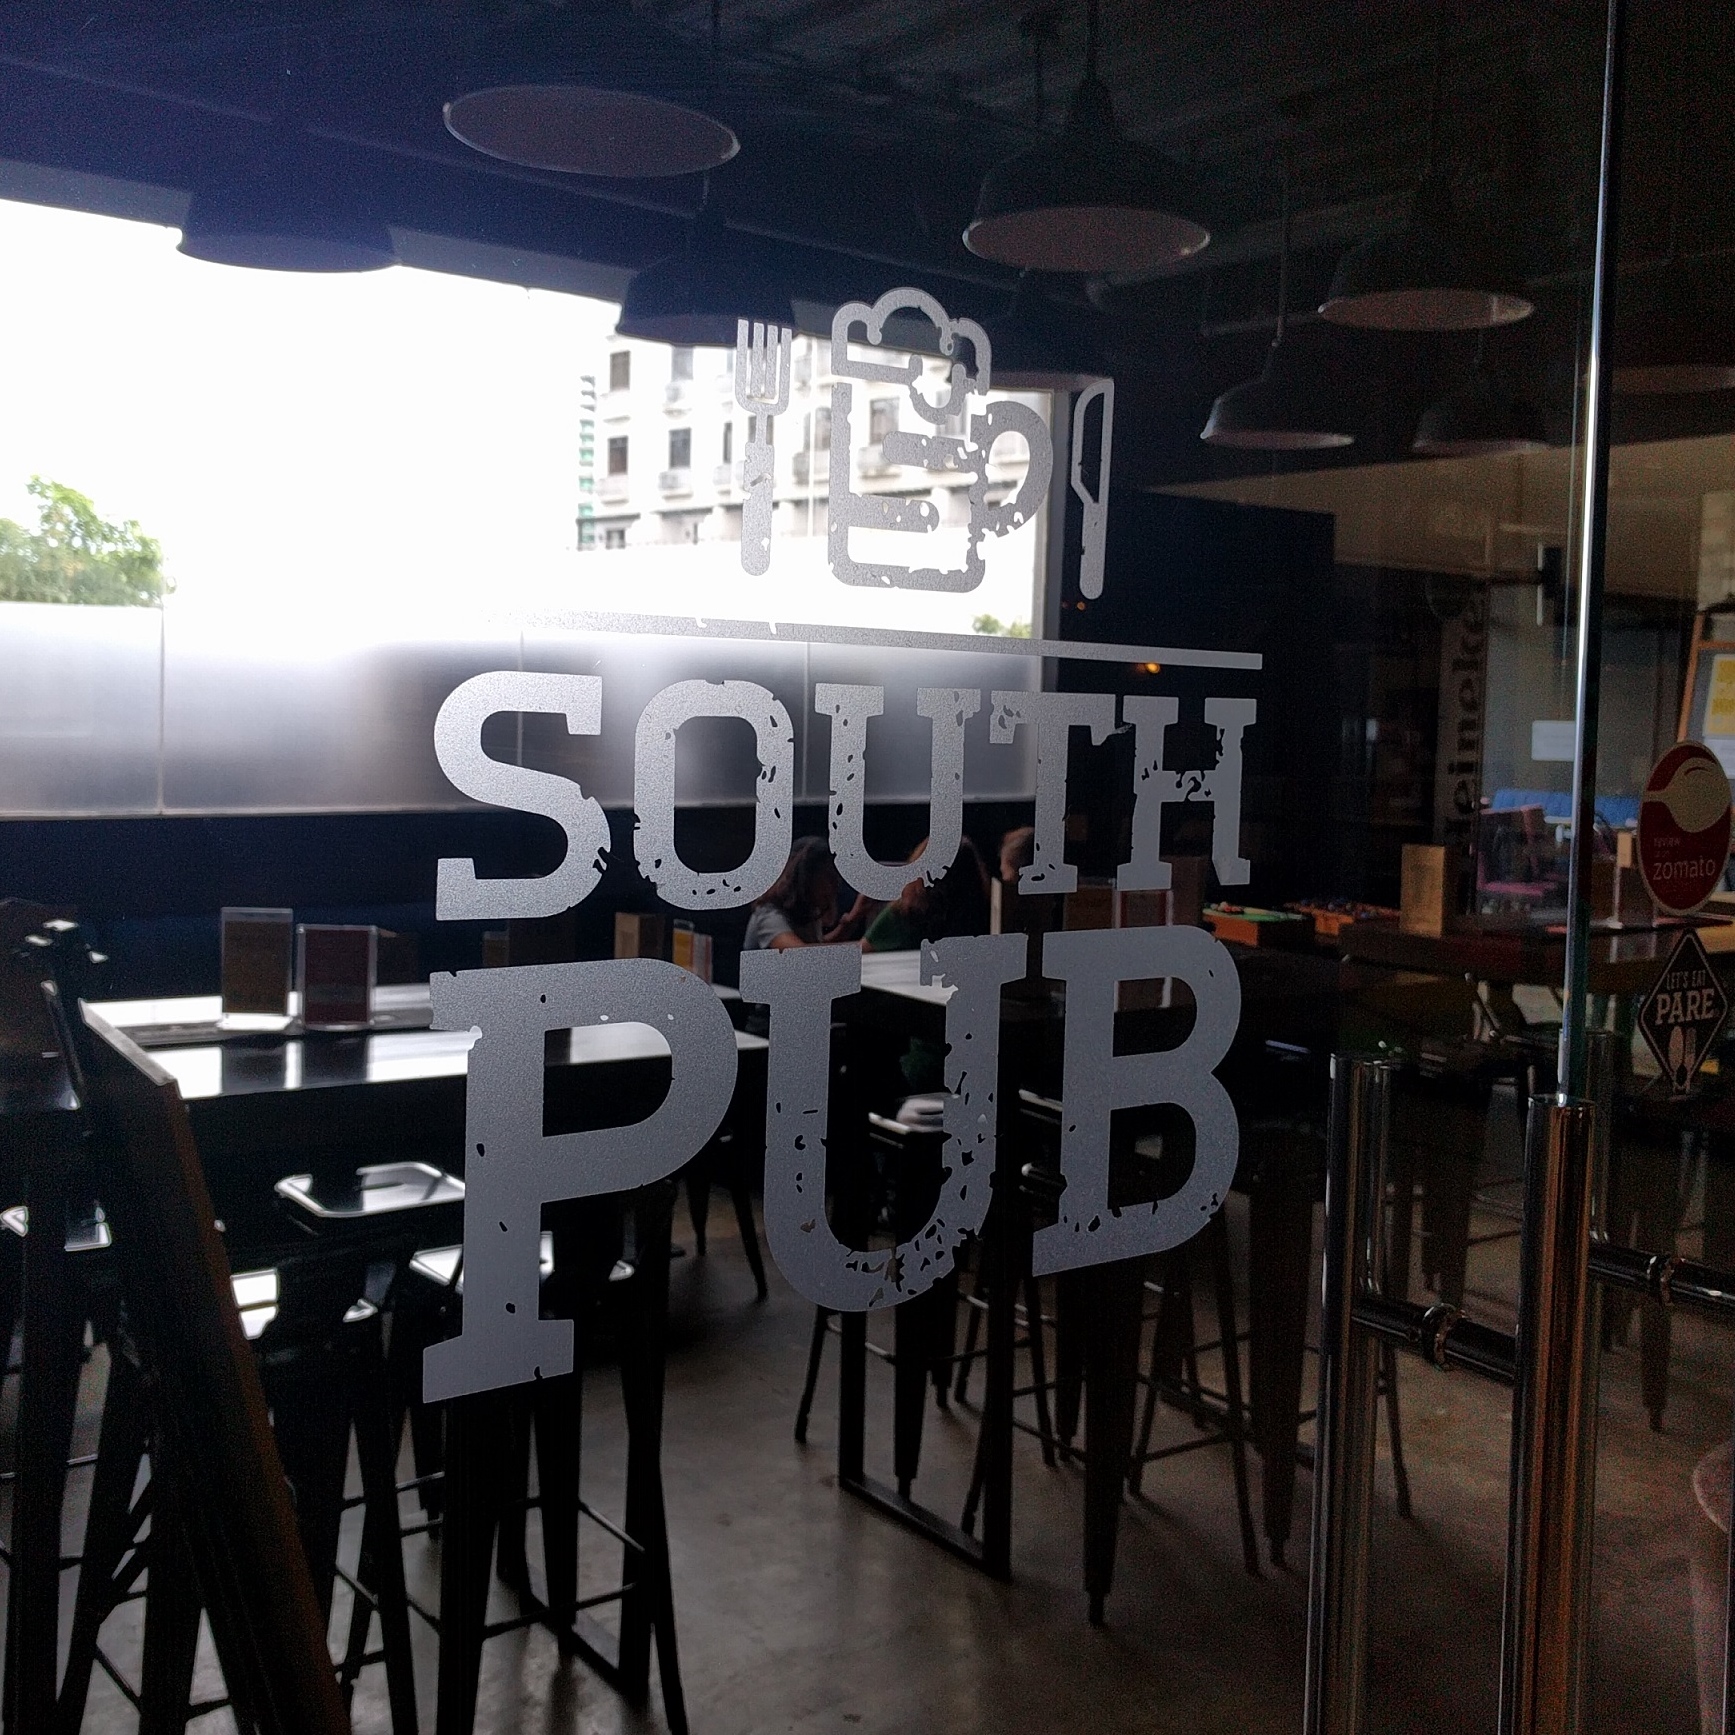 South Pub